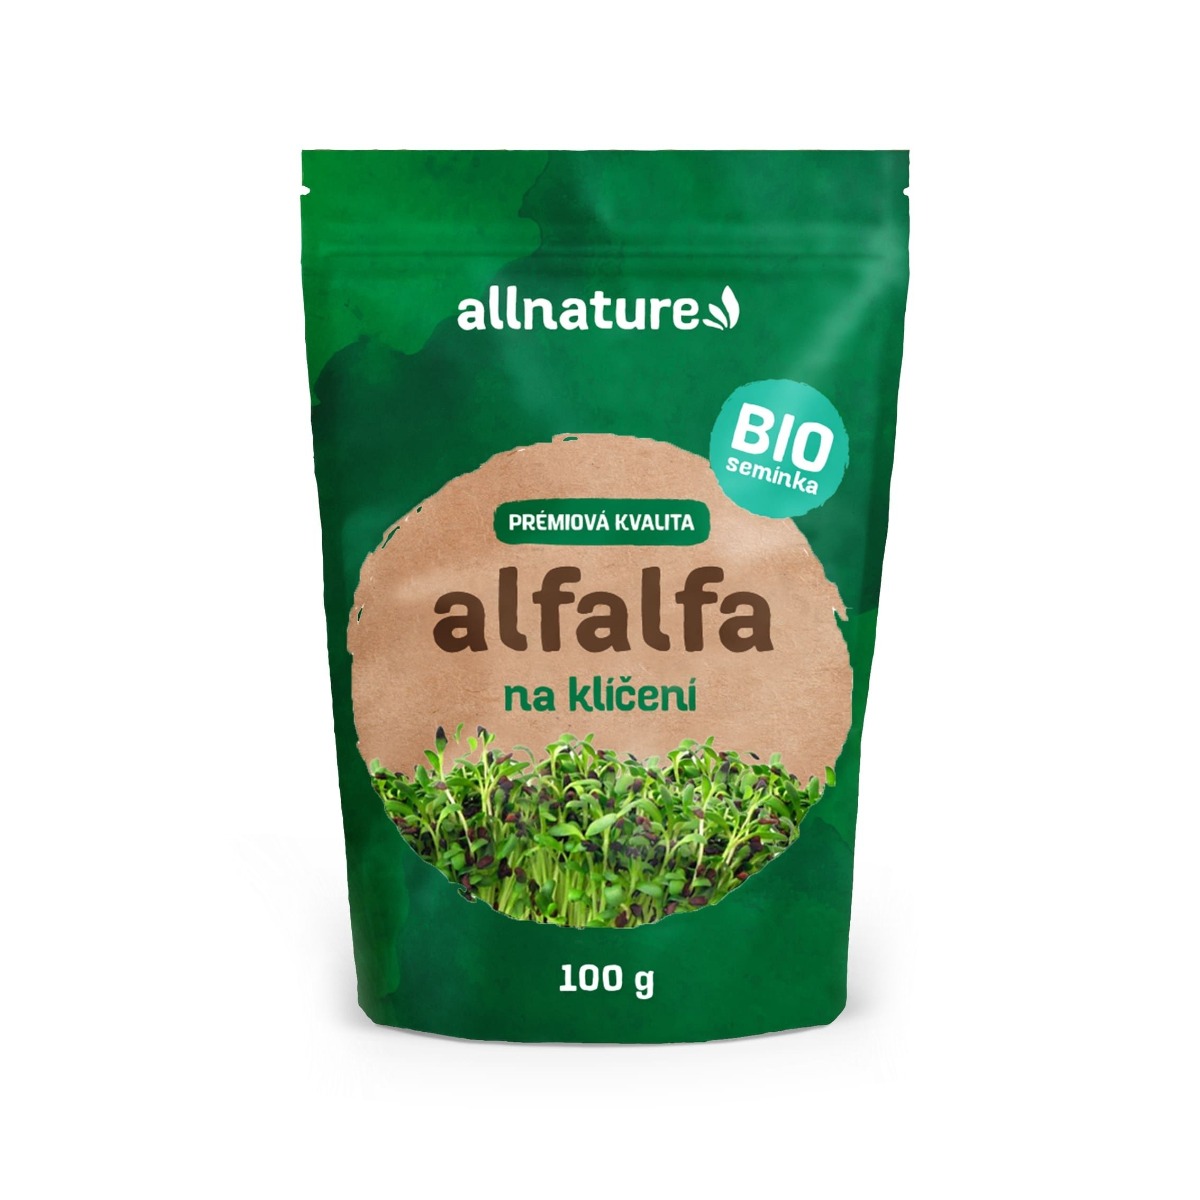 Allnature Semínka na klíčení alfalfa BIO 100 g Allnature